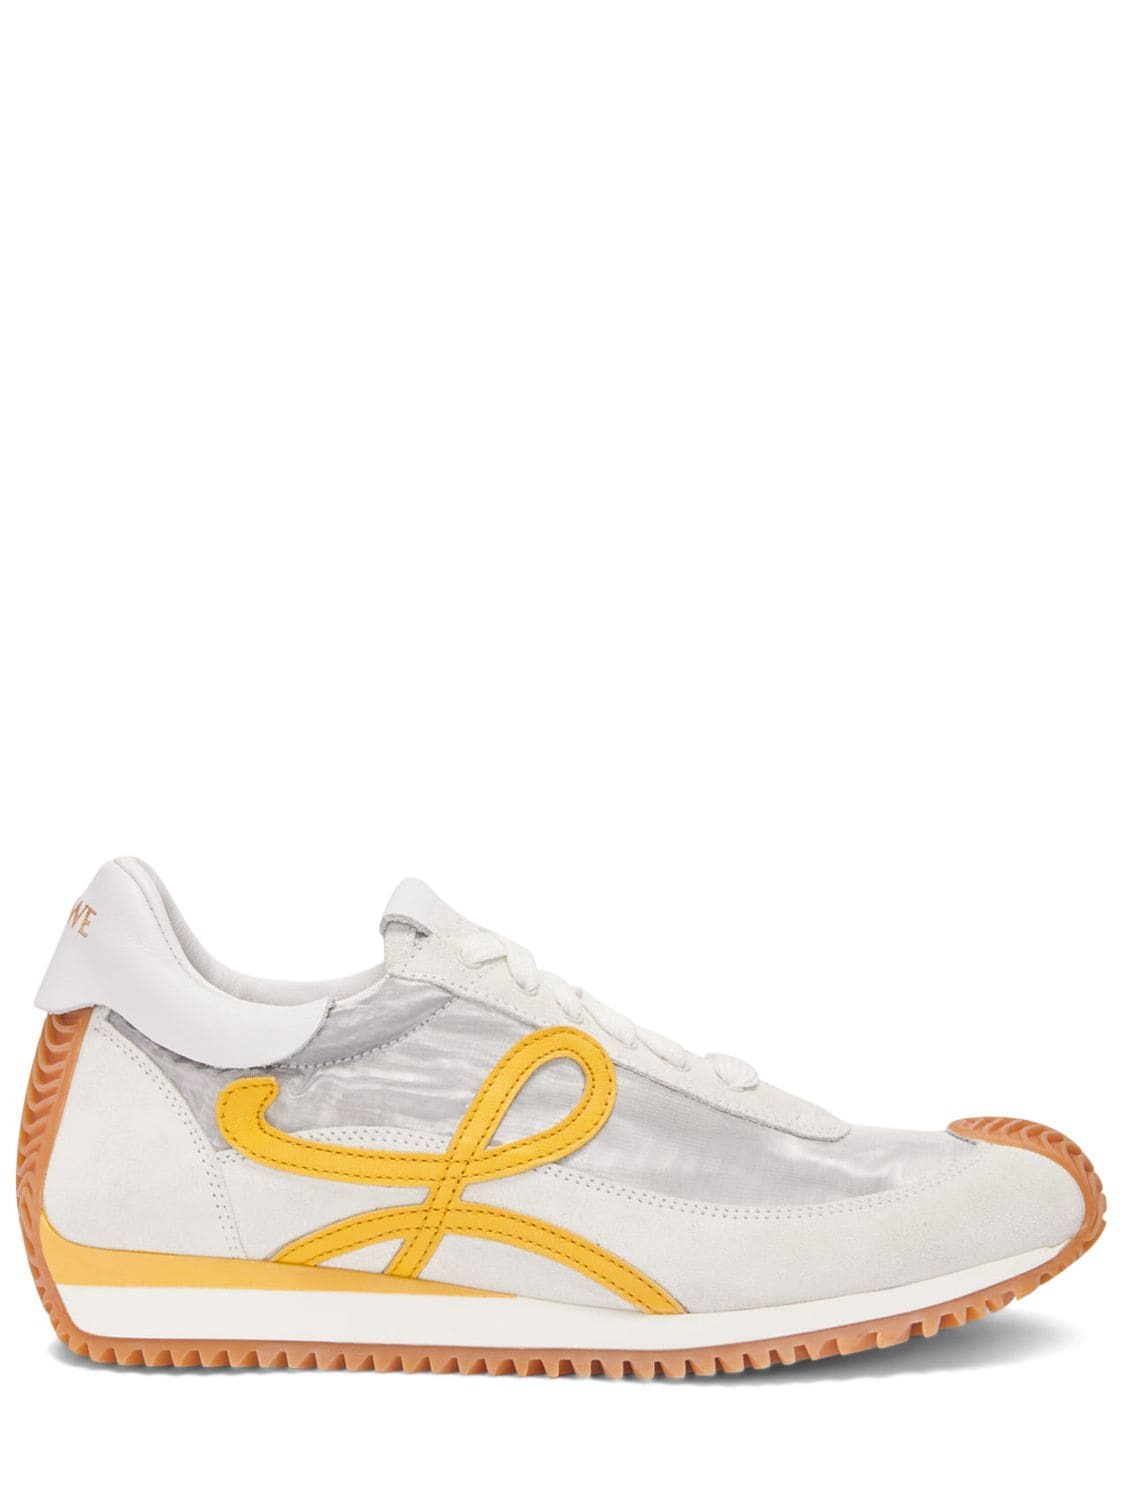 LOEWE 20mm Flow Runner Suede & Mesh Sneakers in white / yellow